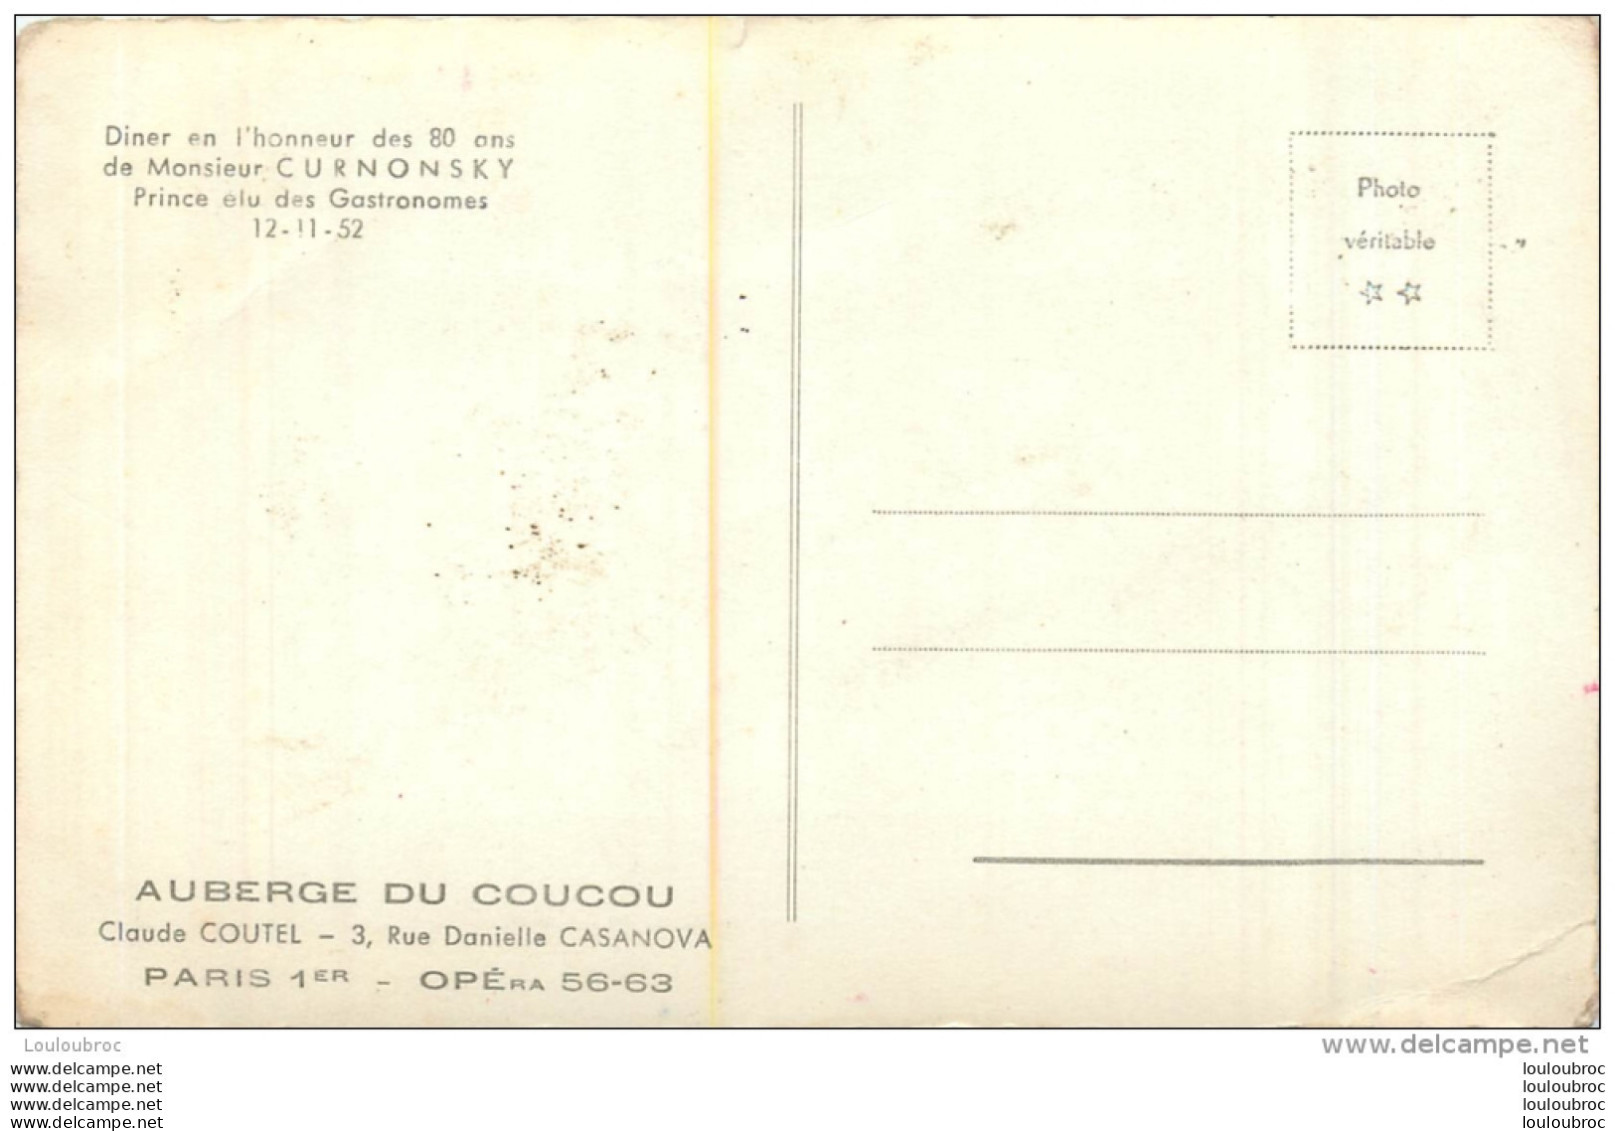 PARIS 1  AUBERGE DU COUCOU CLAUDE COUTEL 3 RUE D. CASANOVA  DINER EN HONNEUR A MR CURNONSKY 1952 - District 01